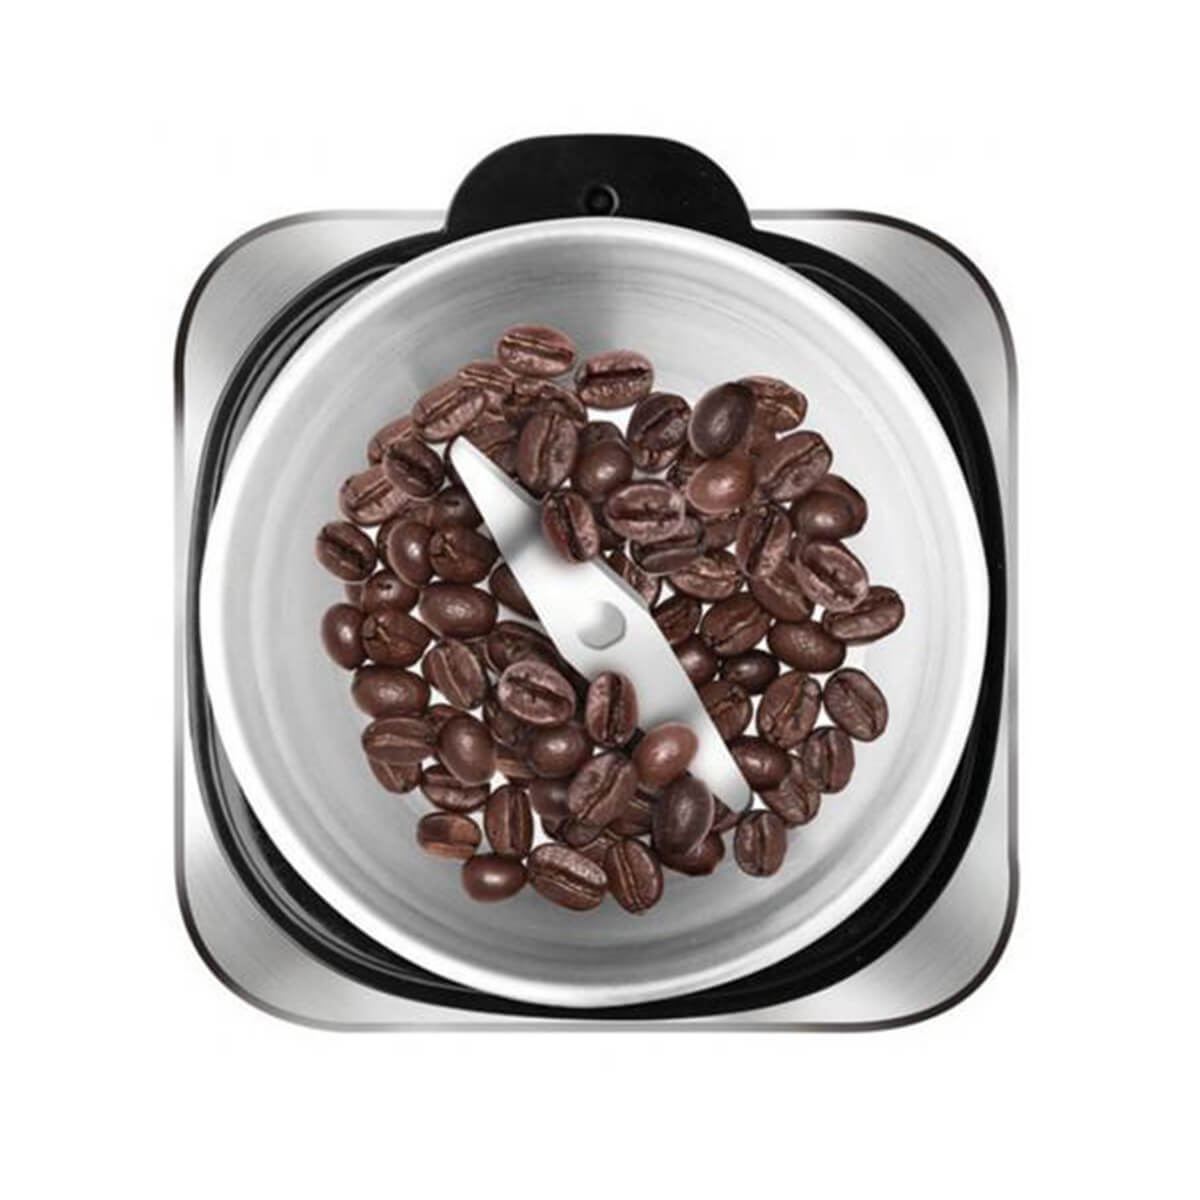 Mlevenje zrna kafe u Mlinu za kafu Aromatic Aparatu za mlevenje kafe i orašastih plodova